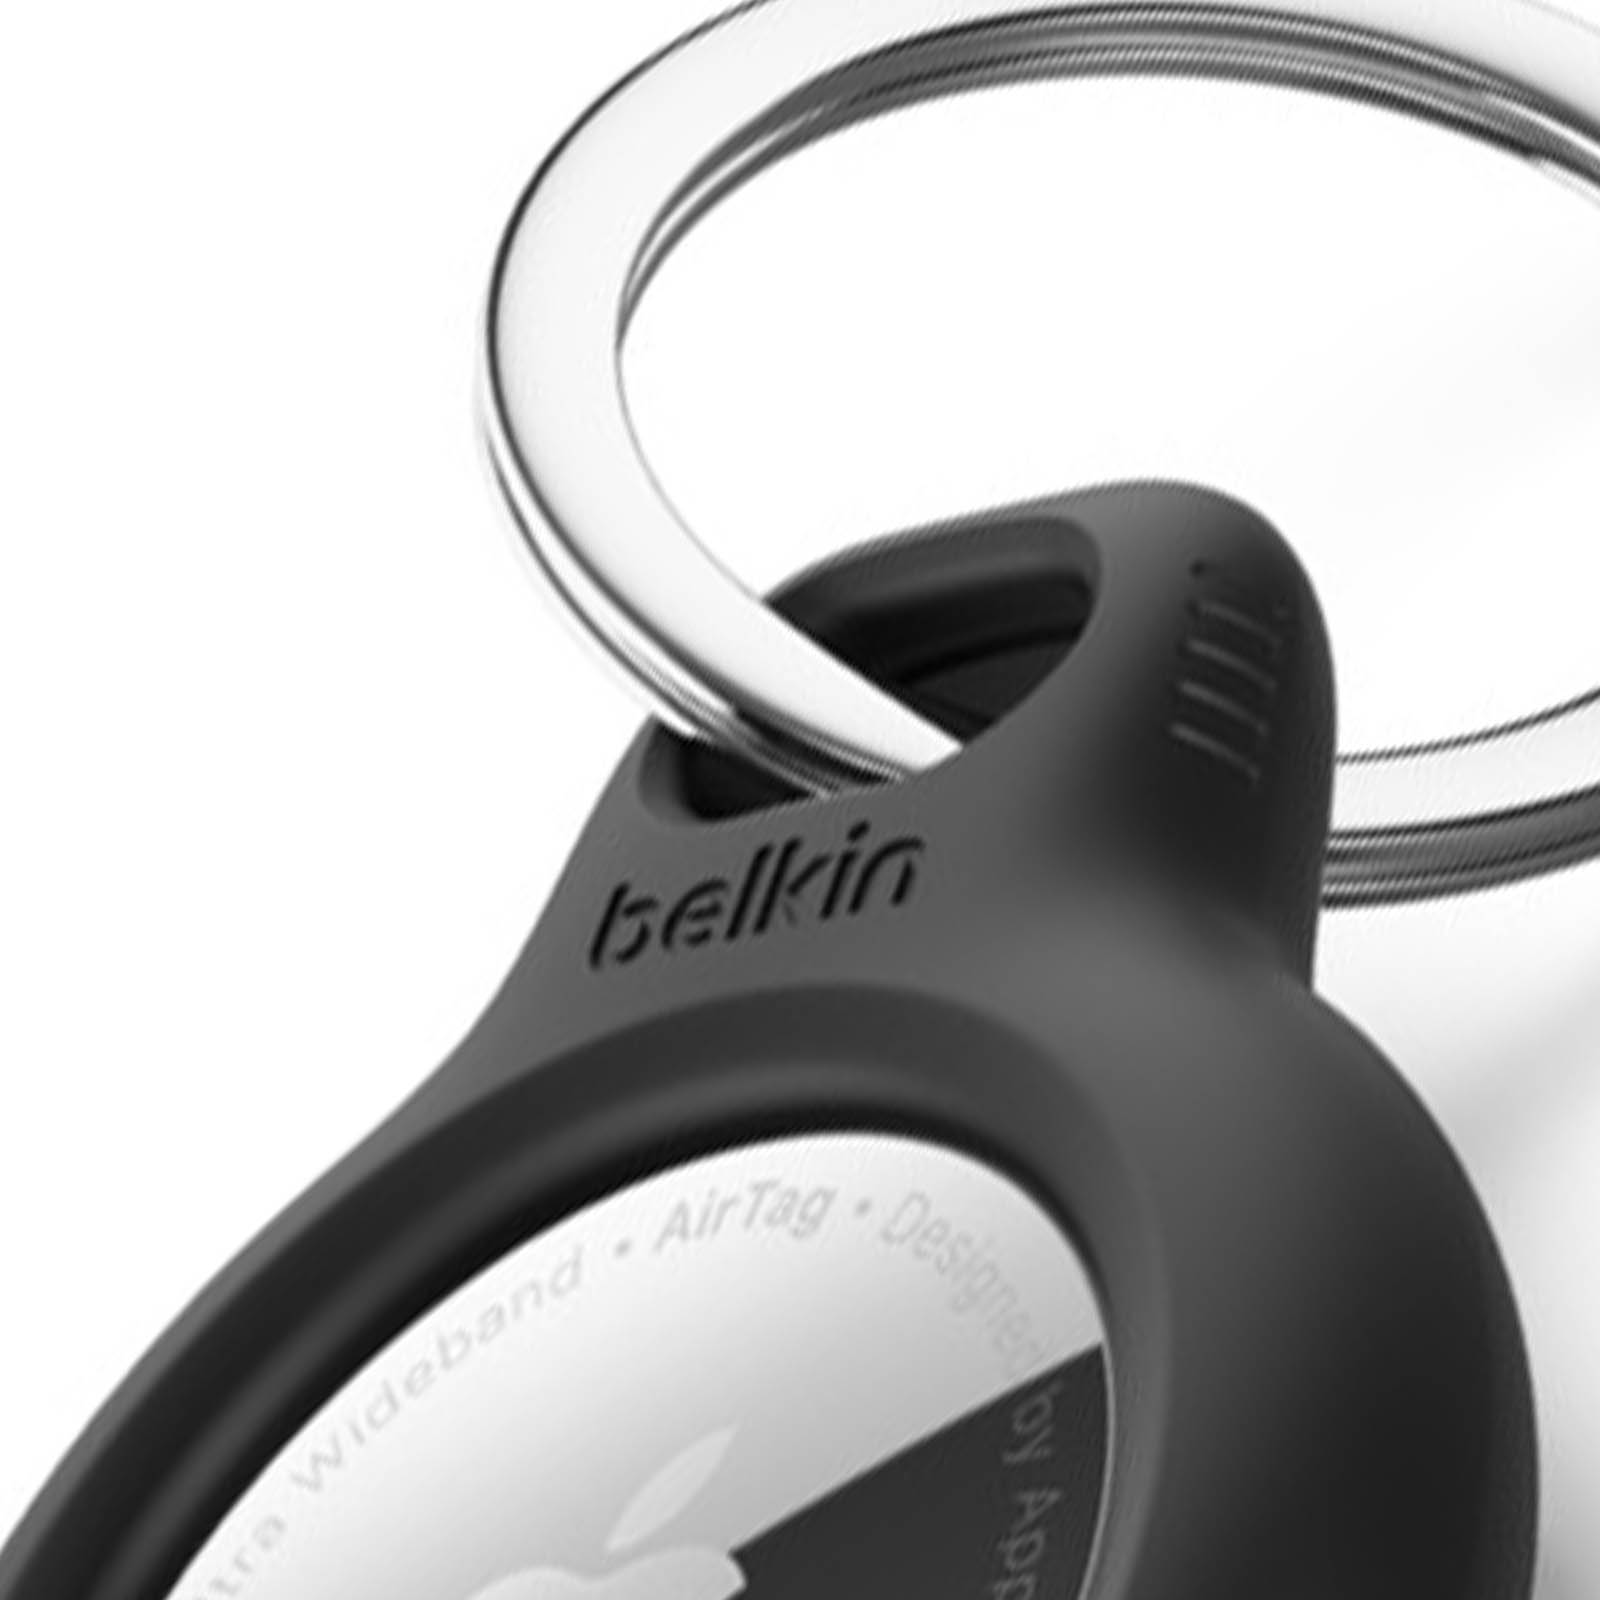 La protection AirTag avec mousqueton de Belkin - Noir - Apple (FR)